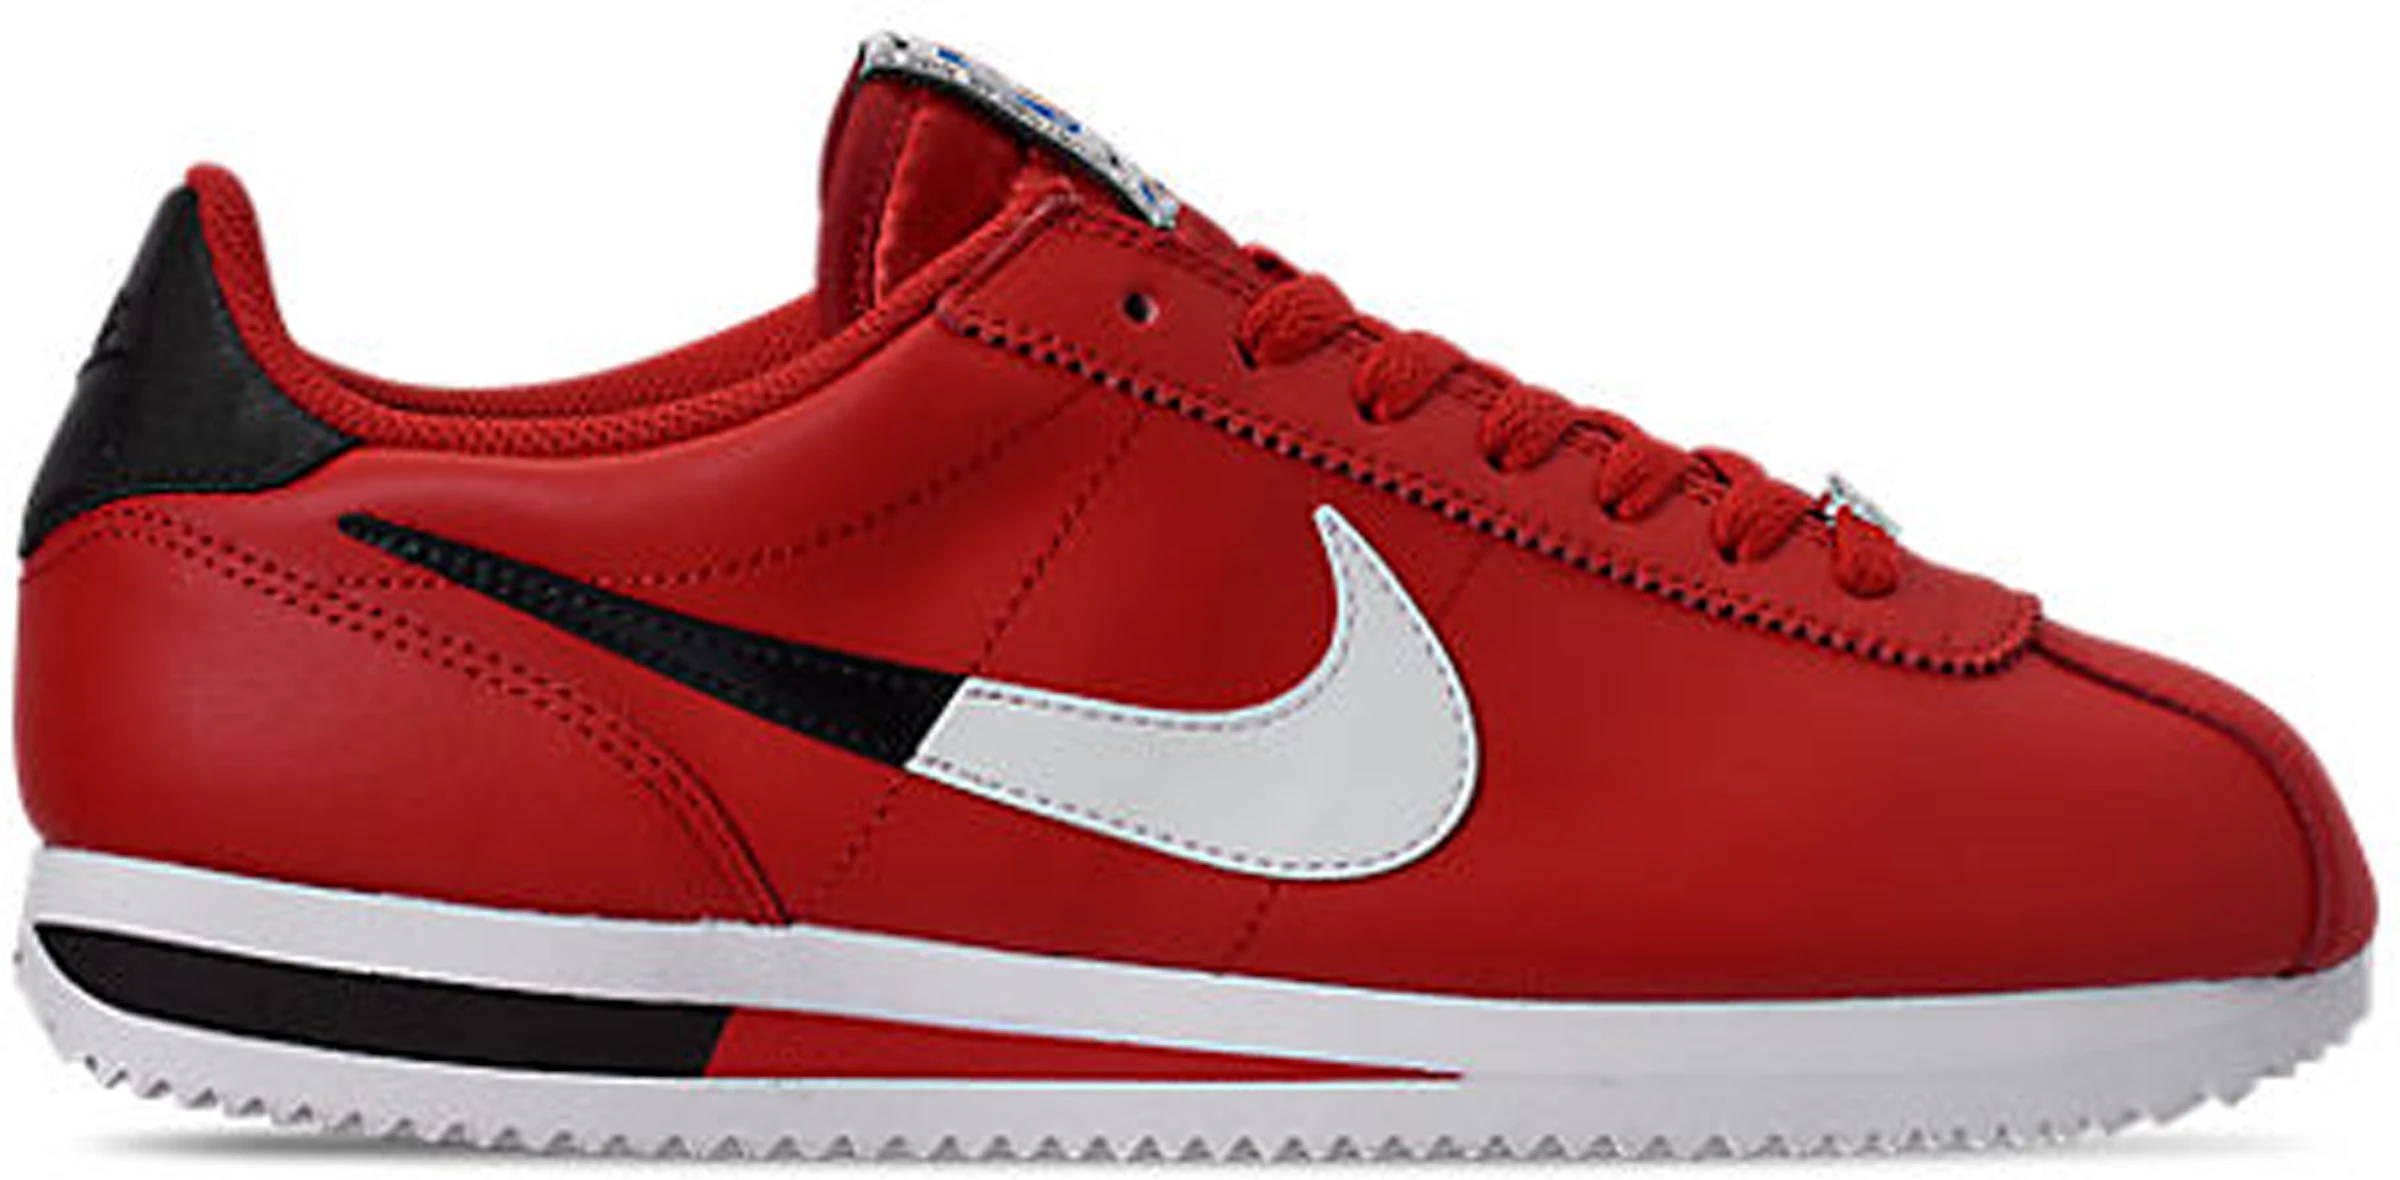 Trágico Corte esférico Compra Nike Cortez Calzado y sneakers nuevos - StockX